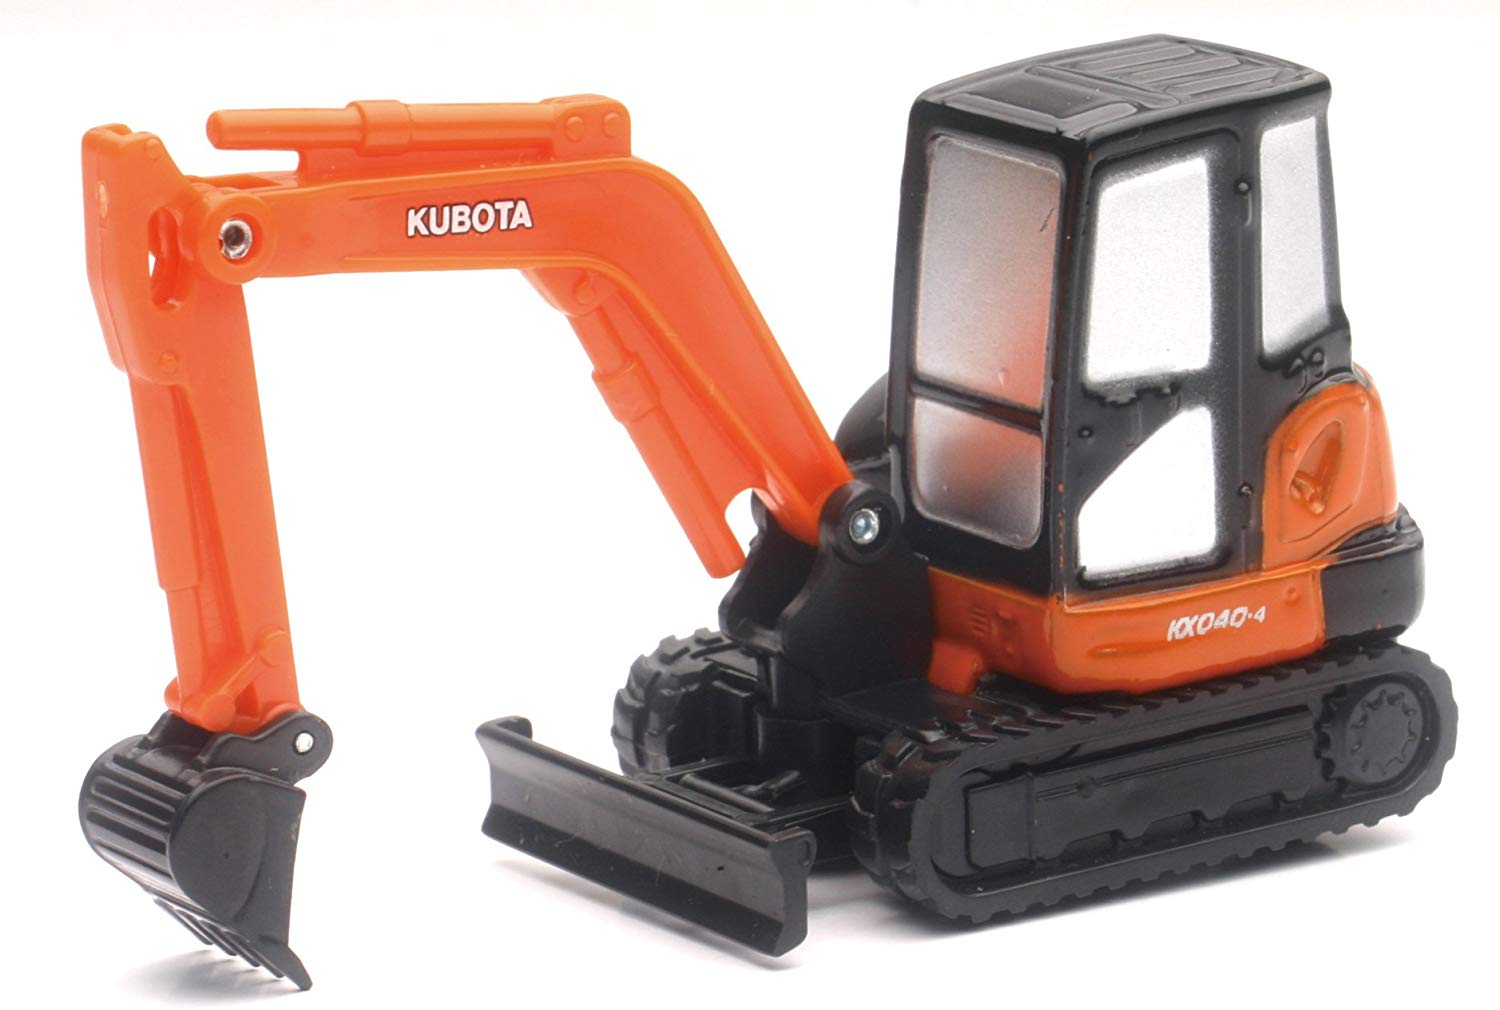 Kubota KX040-4 Mini Pull-Back Excavator